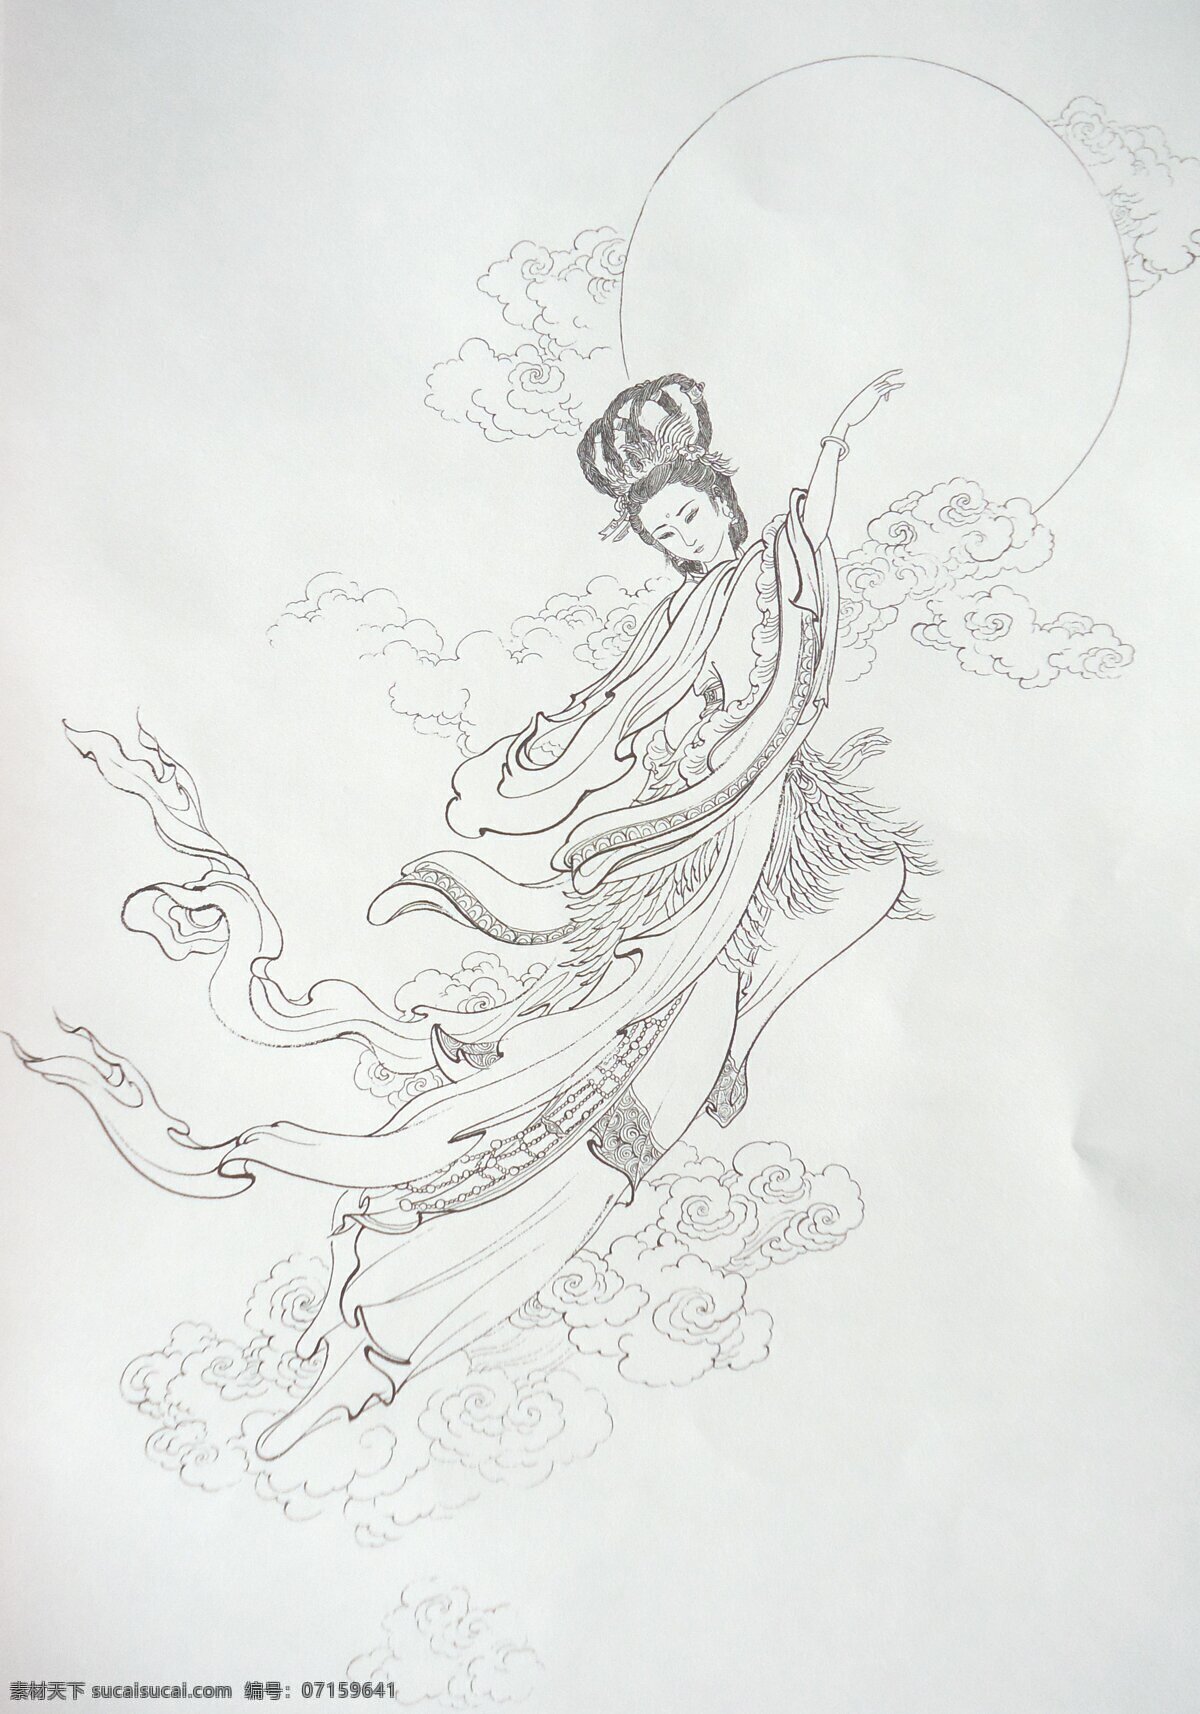 嫦娥奔月 嫦娥 神话人物 工笔画 绘画 美术 白描 线描 李云中 传统人物画 绘画书法 文化艺术